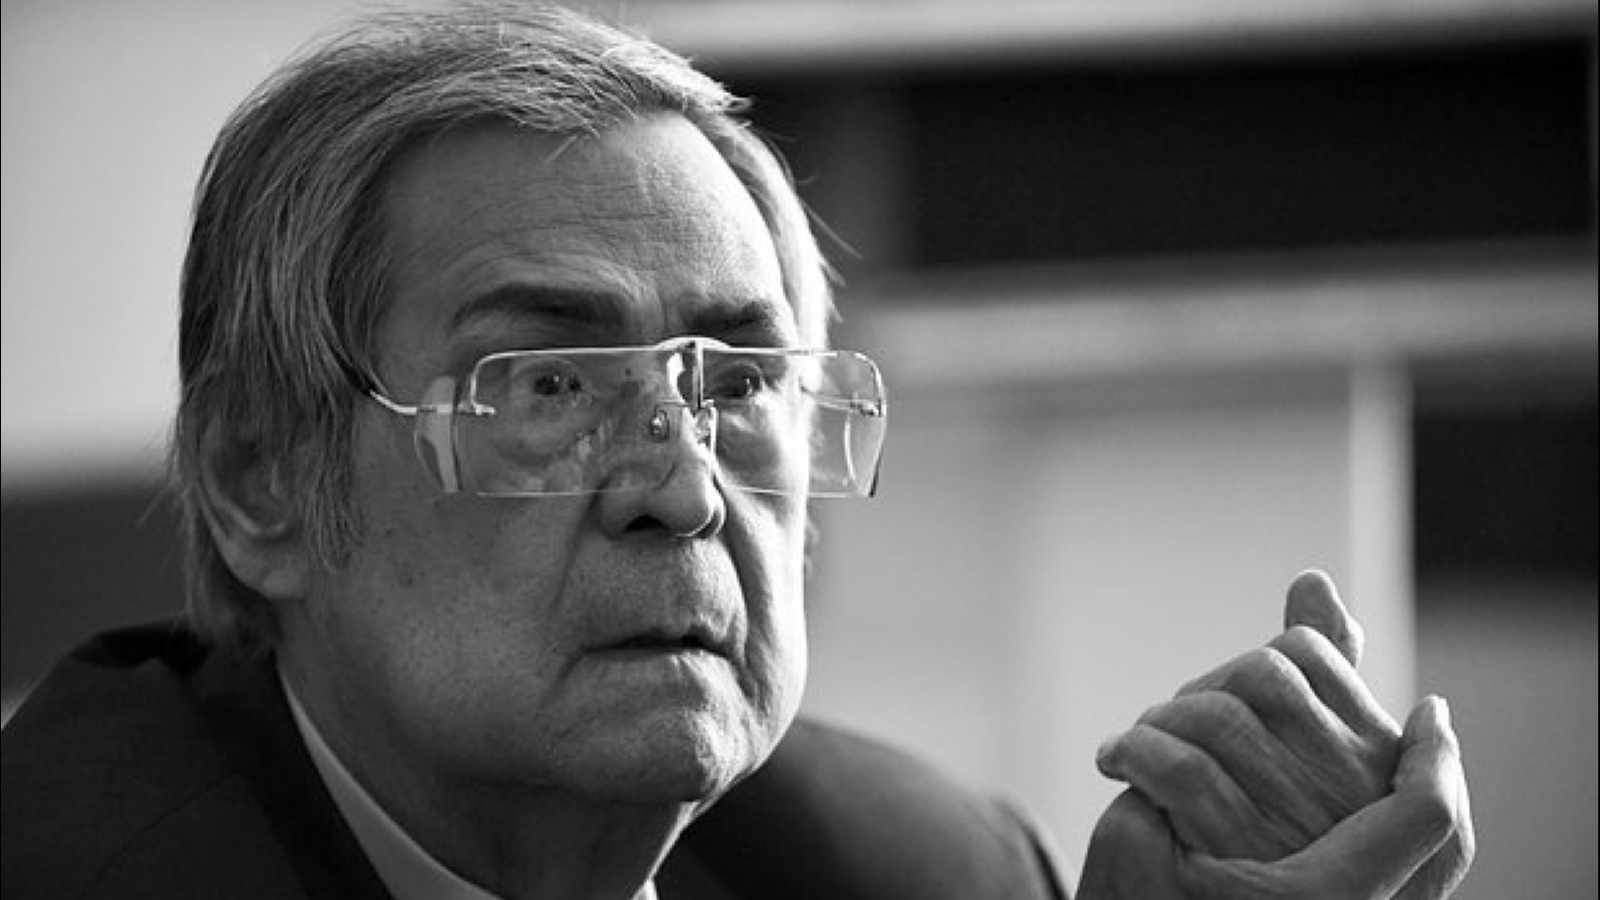 Скончался экс-губернатор Кузбасса Аман Тулеев. Он возглавлял регион более 20 лет